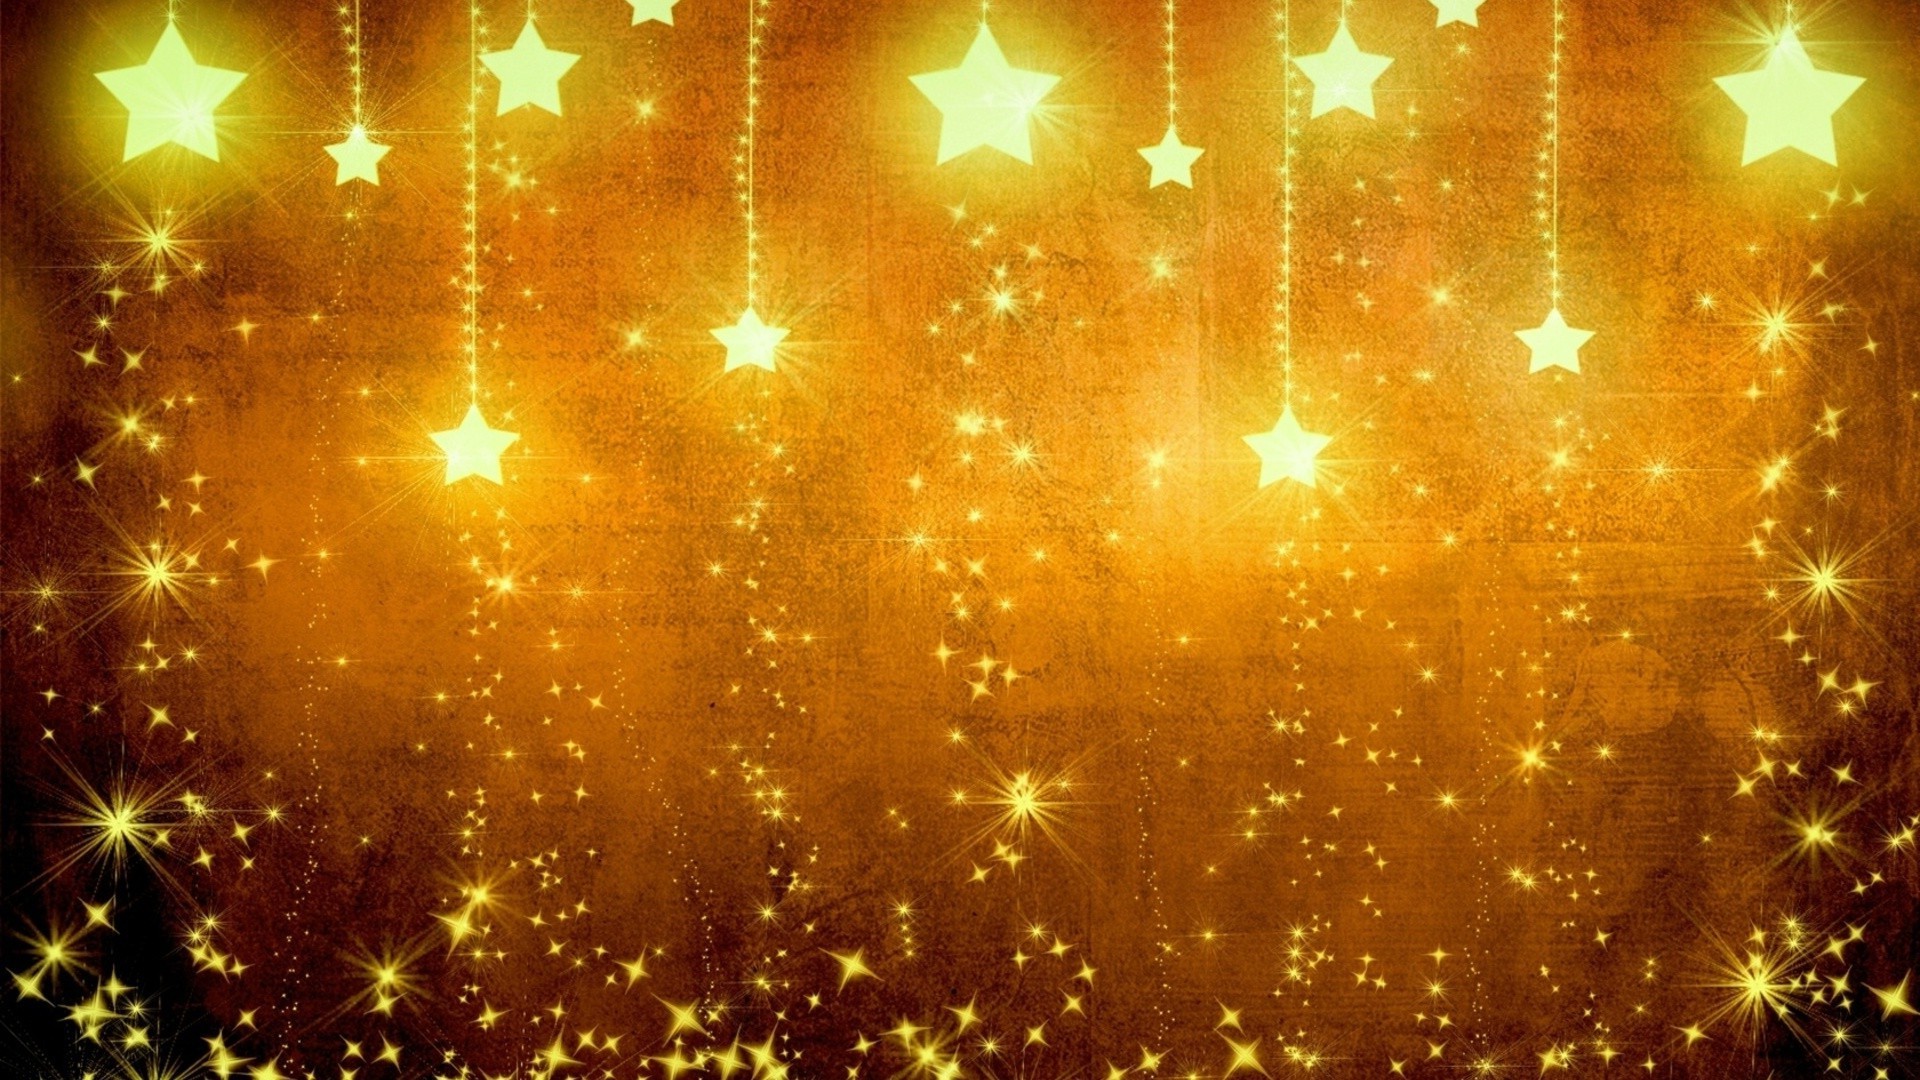 праздничные атрибуты рождество аннотация праздник светит украшения ева яркий мерри блестят дизайн свет рабочего стола зима шаблон фон текстура обои люминесценция карта золото